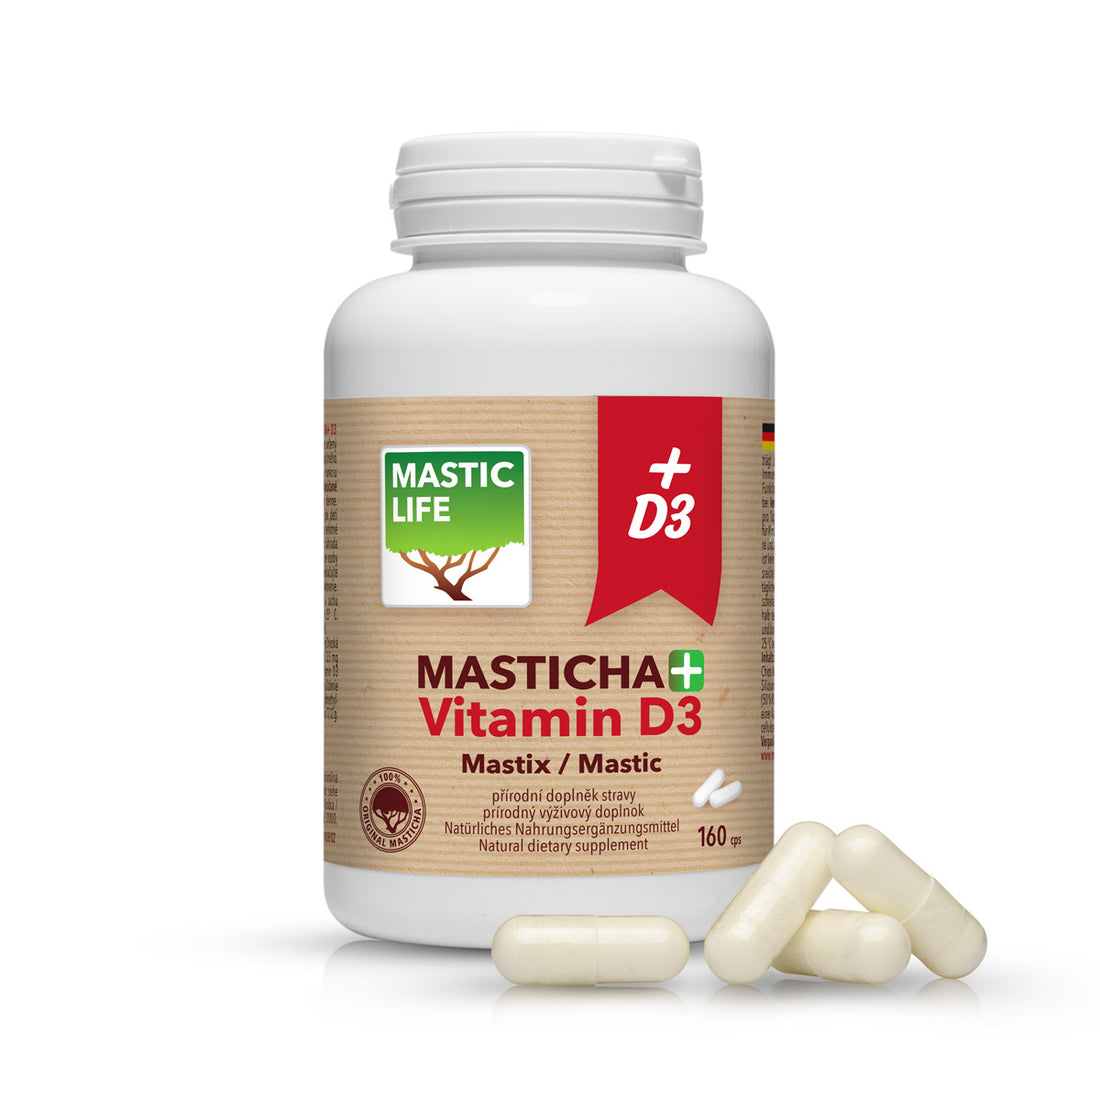 Mastic Gum Capsules with Vitamin D3: the Autumn Bestseller